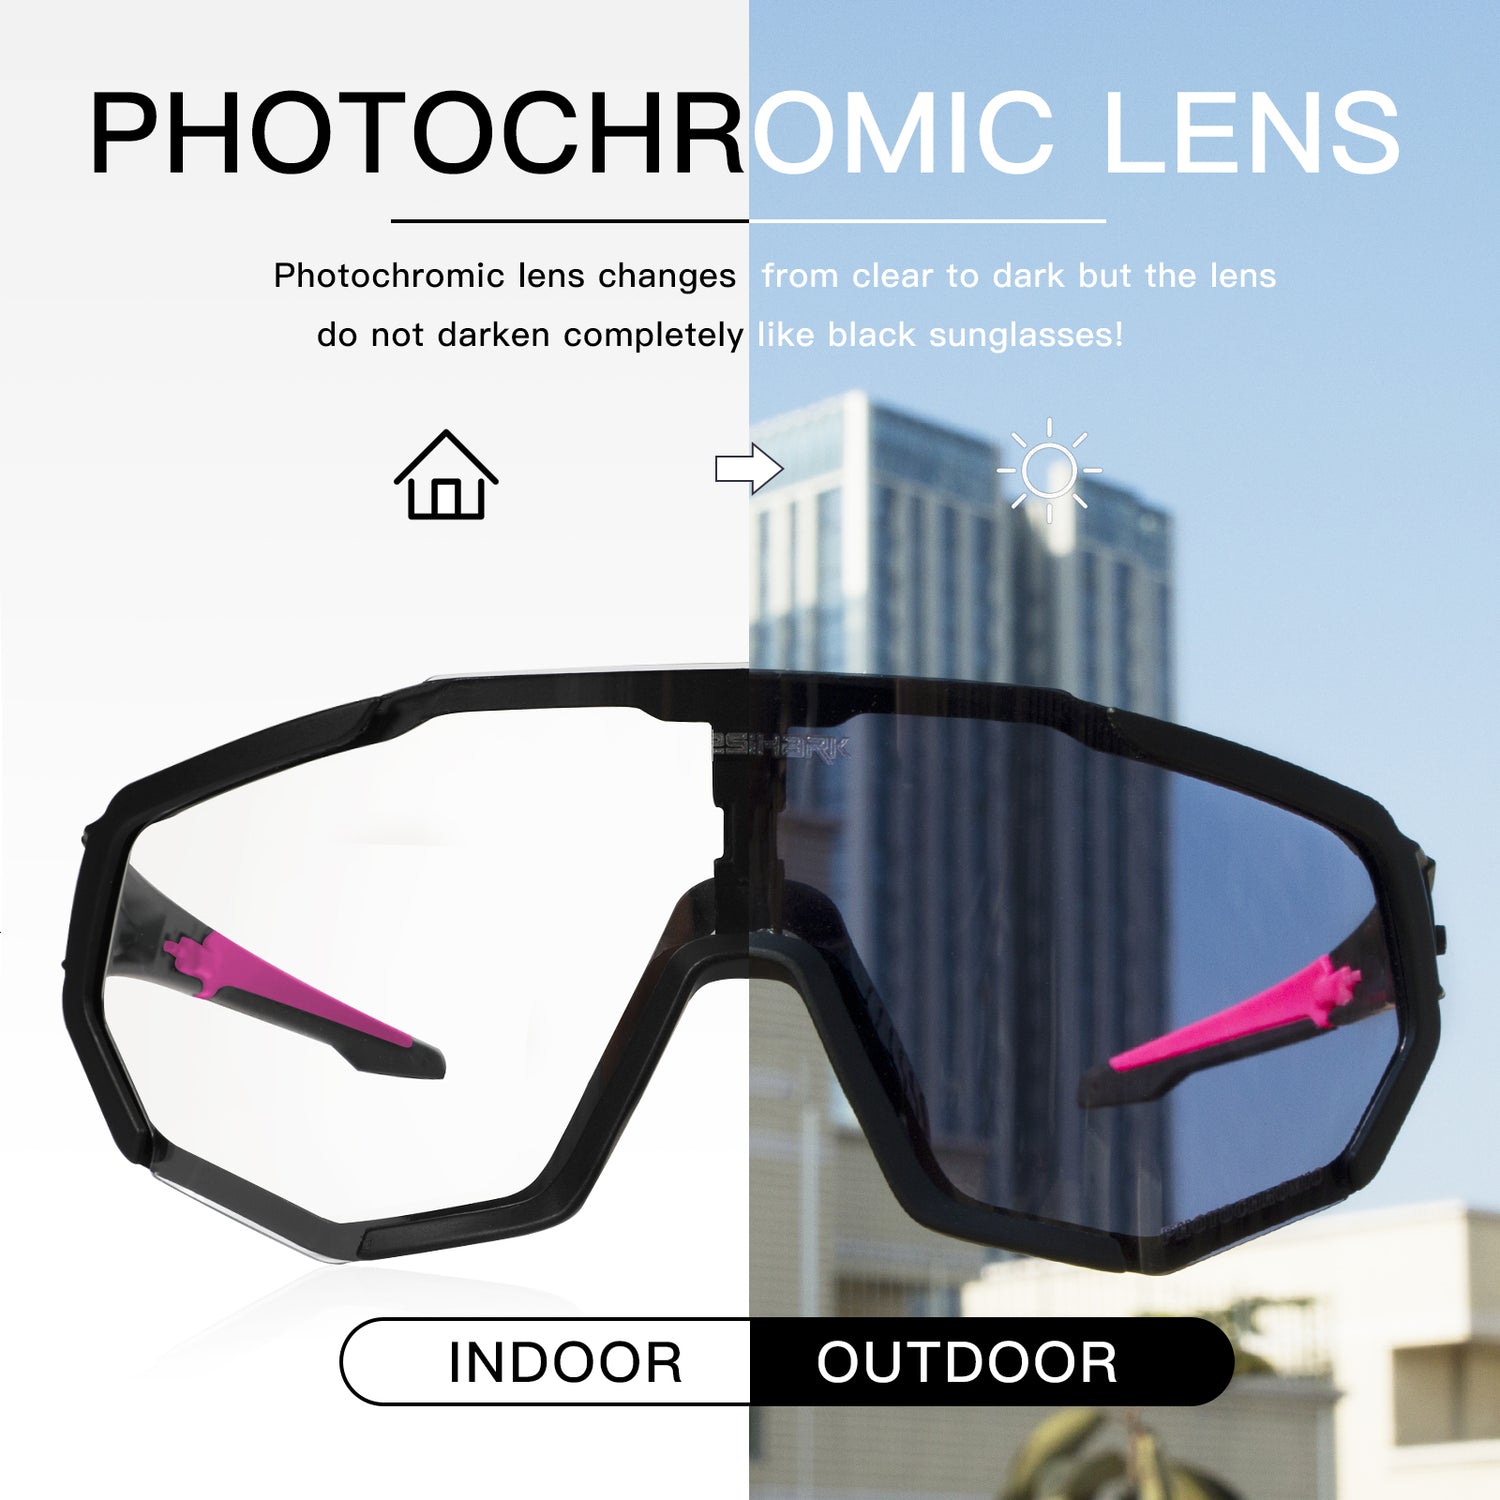 QE48-Accessoires de verres pour lunettes de cyclisme sport photochromiques  – QUESHARK